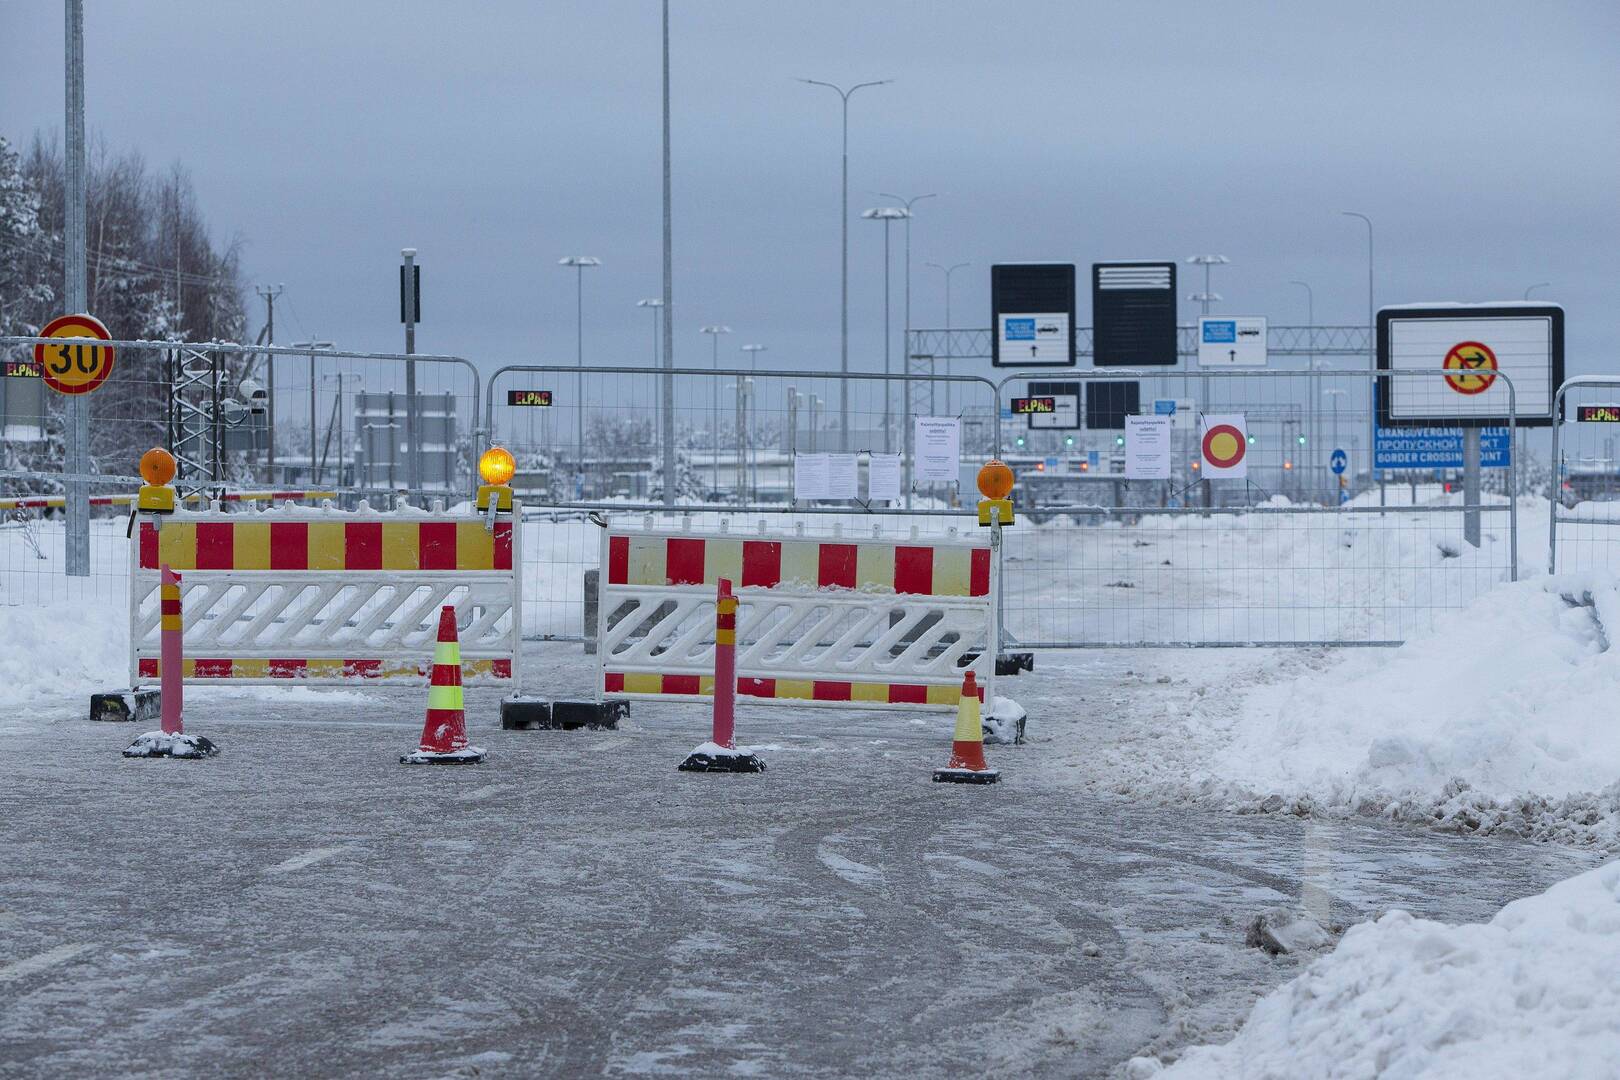 وزيرة فنلندية: الحدود مع روسيا ستبقى مغلقة لشهر آخر